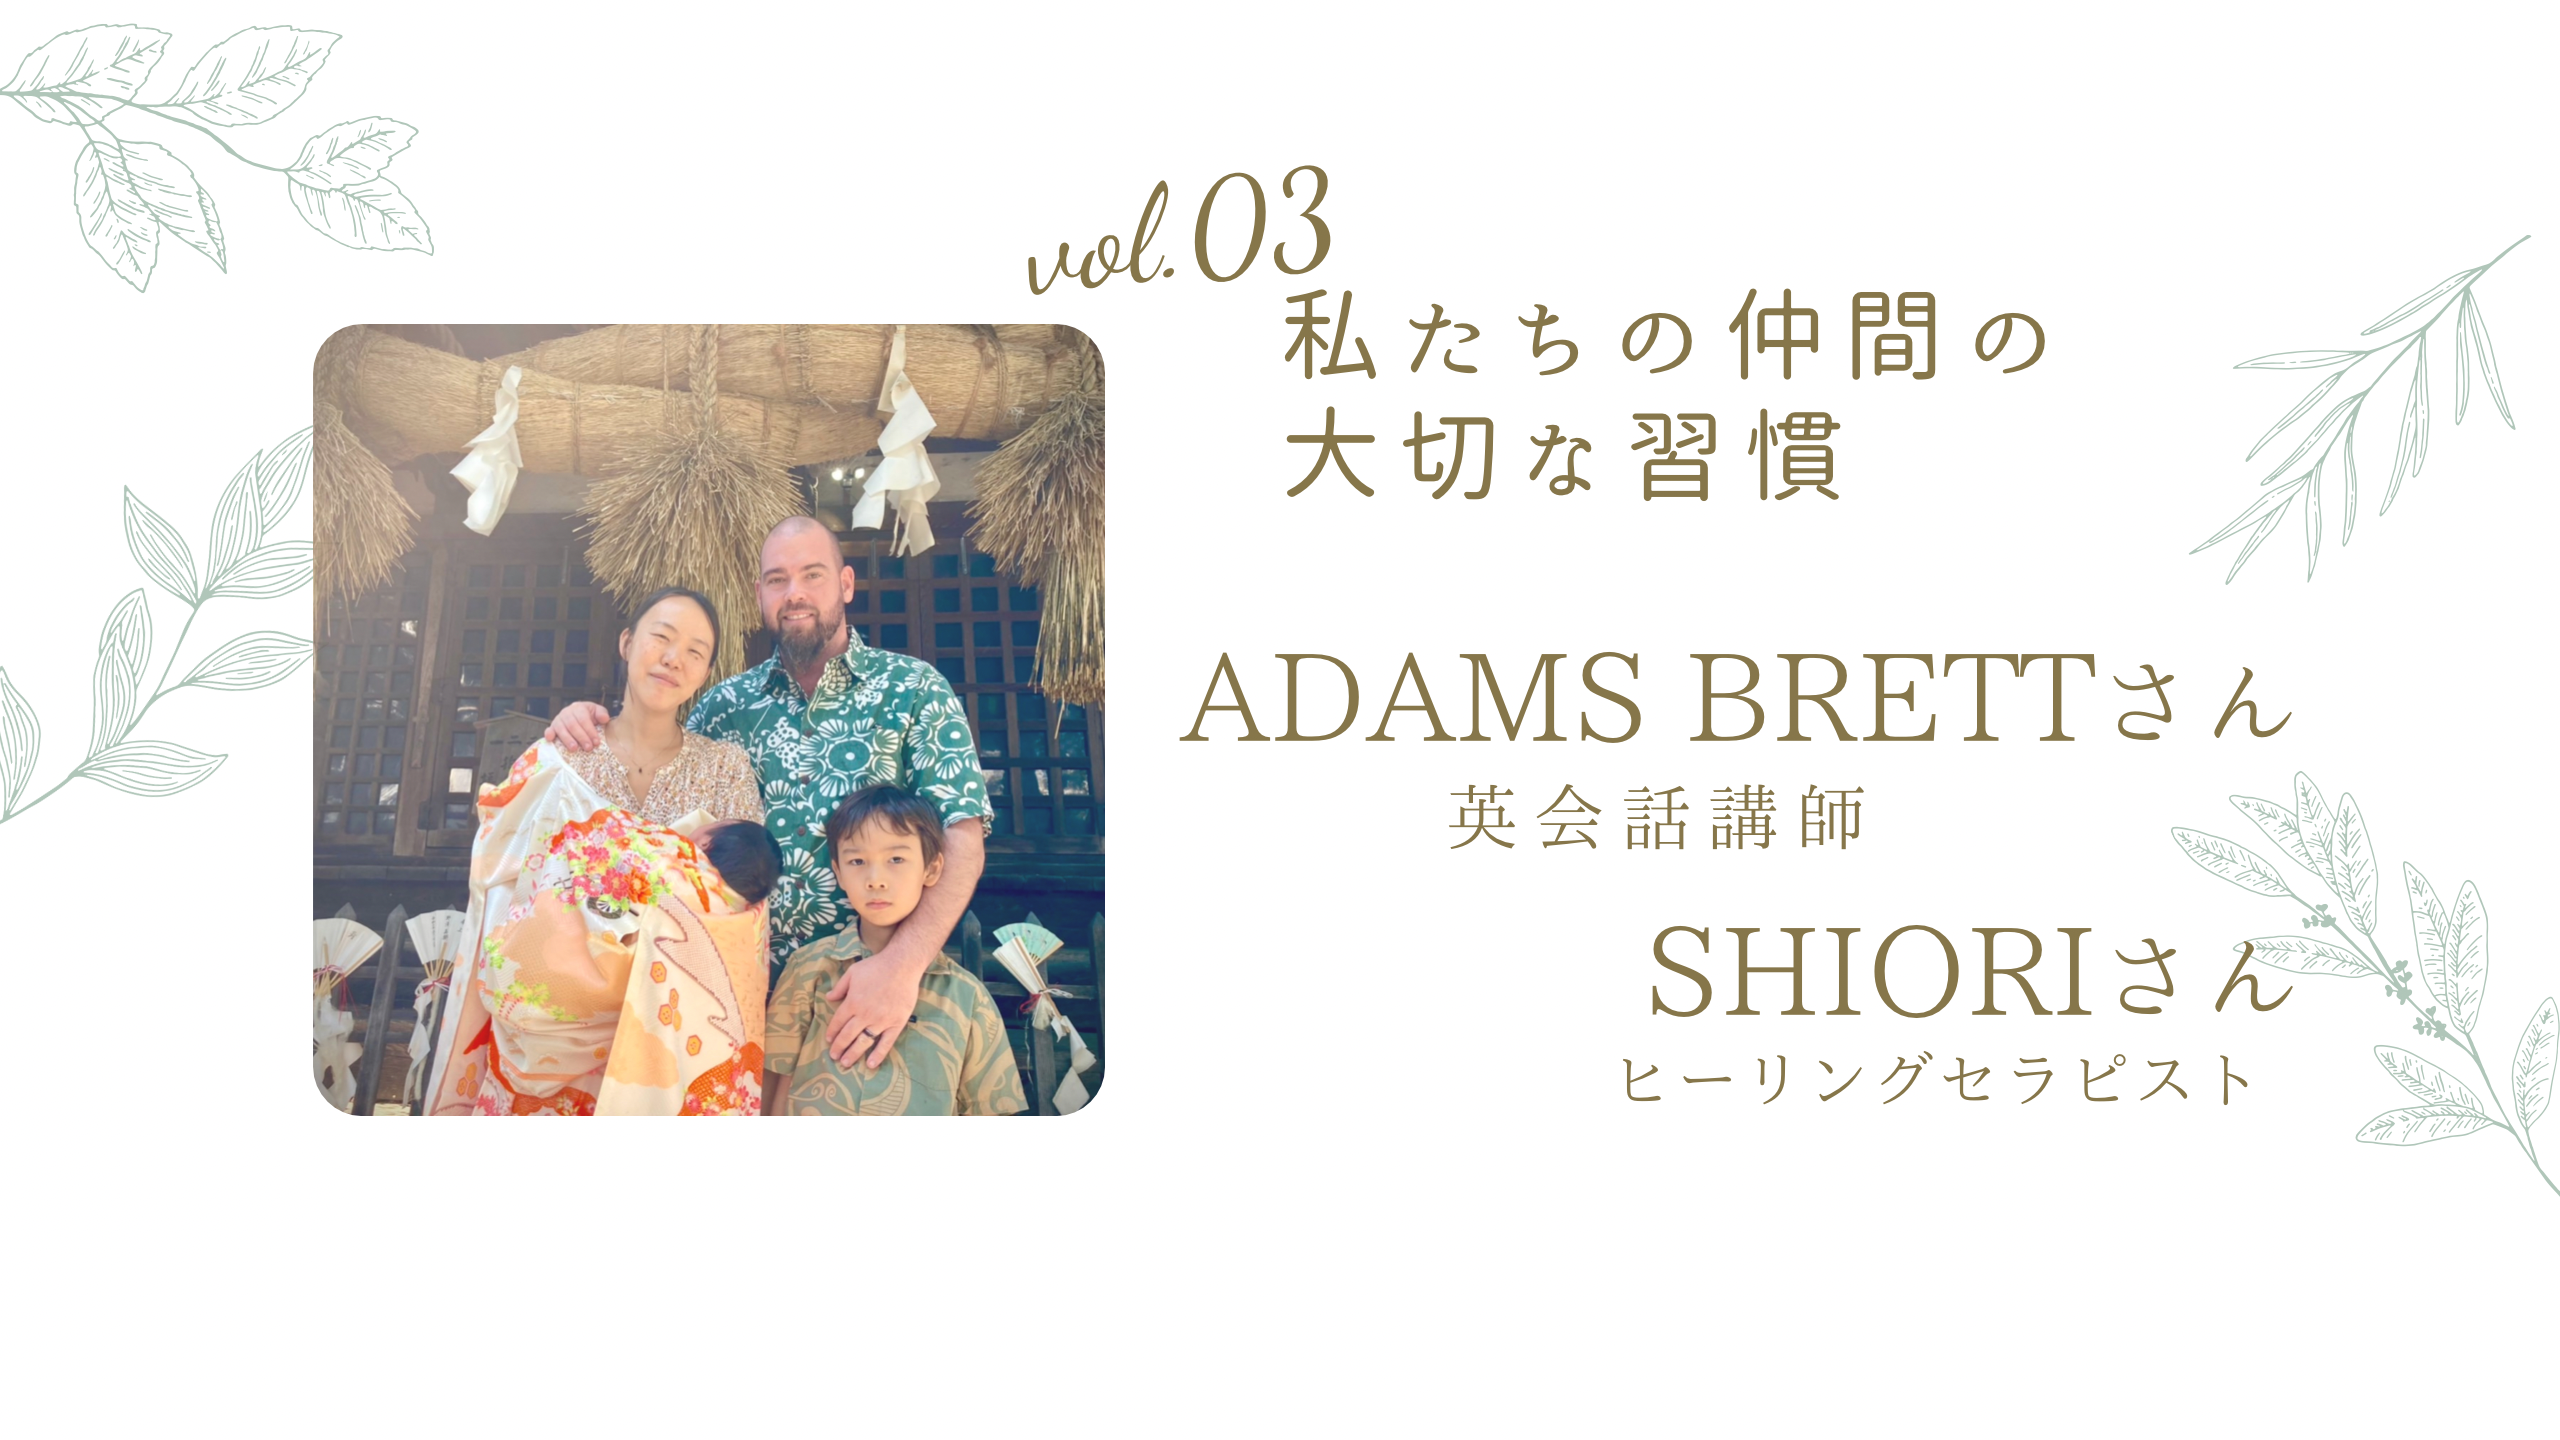 私たち仲間の大切な習慣vol.03 Adams Brettさん 英会話講師と奥様 Shioriさん